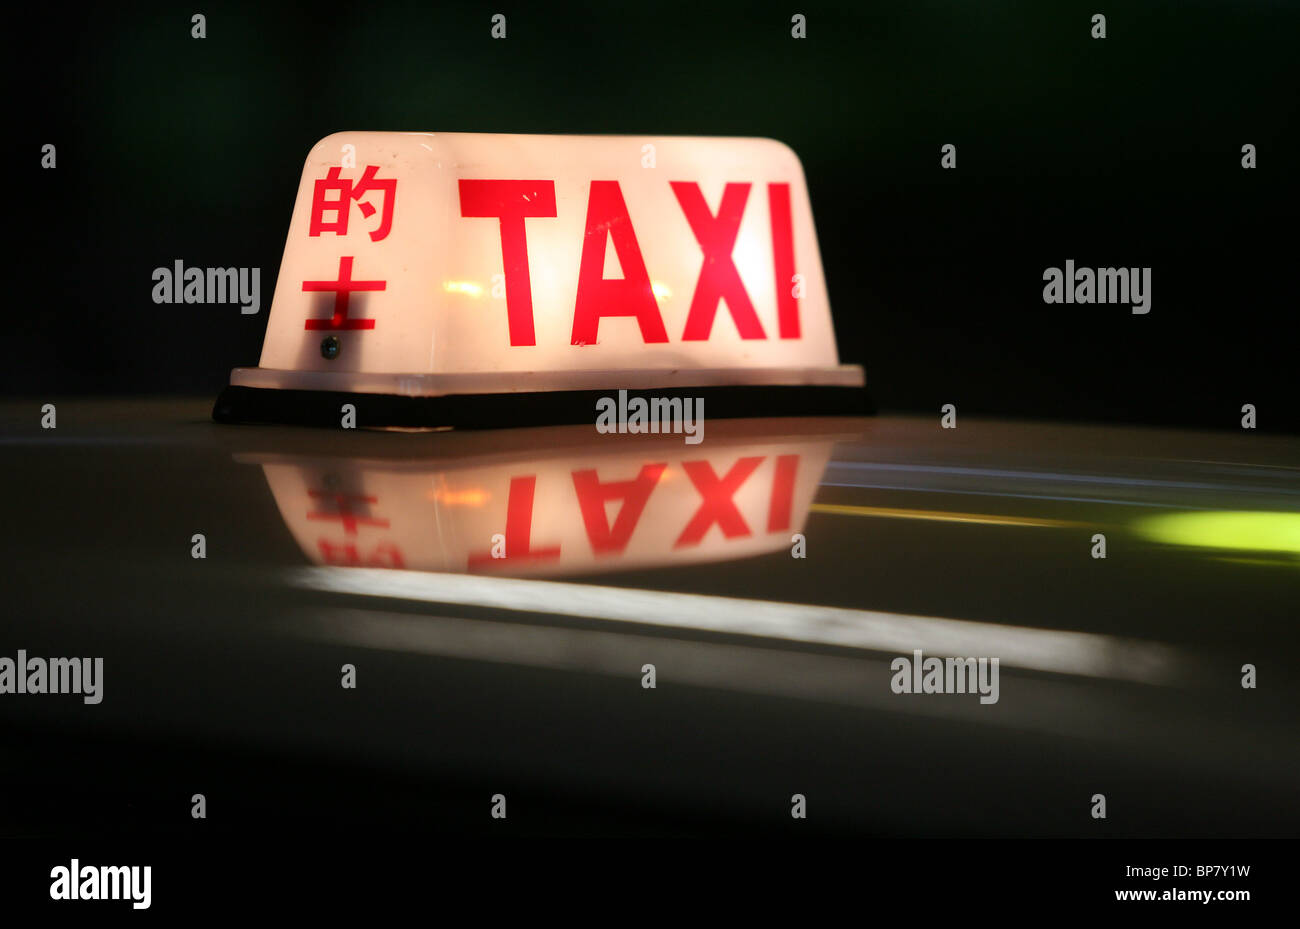 Illuminated taxi roof sign, Hong Kong, China Stock Photo